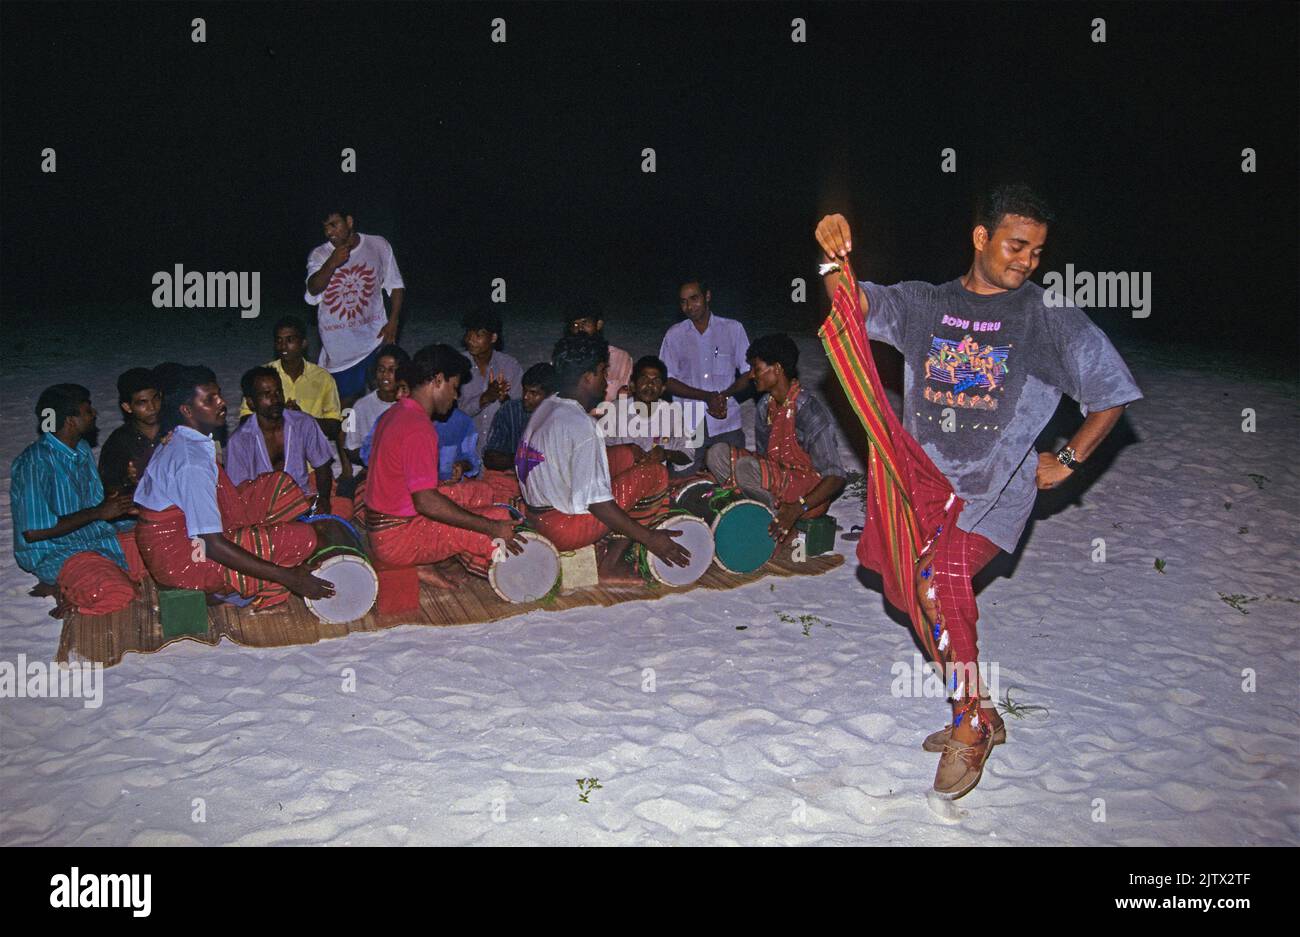 Maledivische Männer, die Bodu Beru spielen, traditionelle Lieder und Tänze, Heimatinsel Mahembadhoo, Malediven, Indischer Ozean, Asien Stockfoto